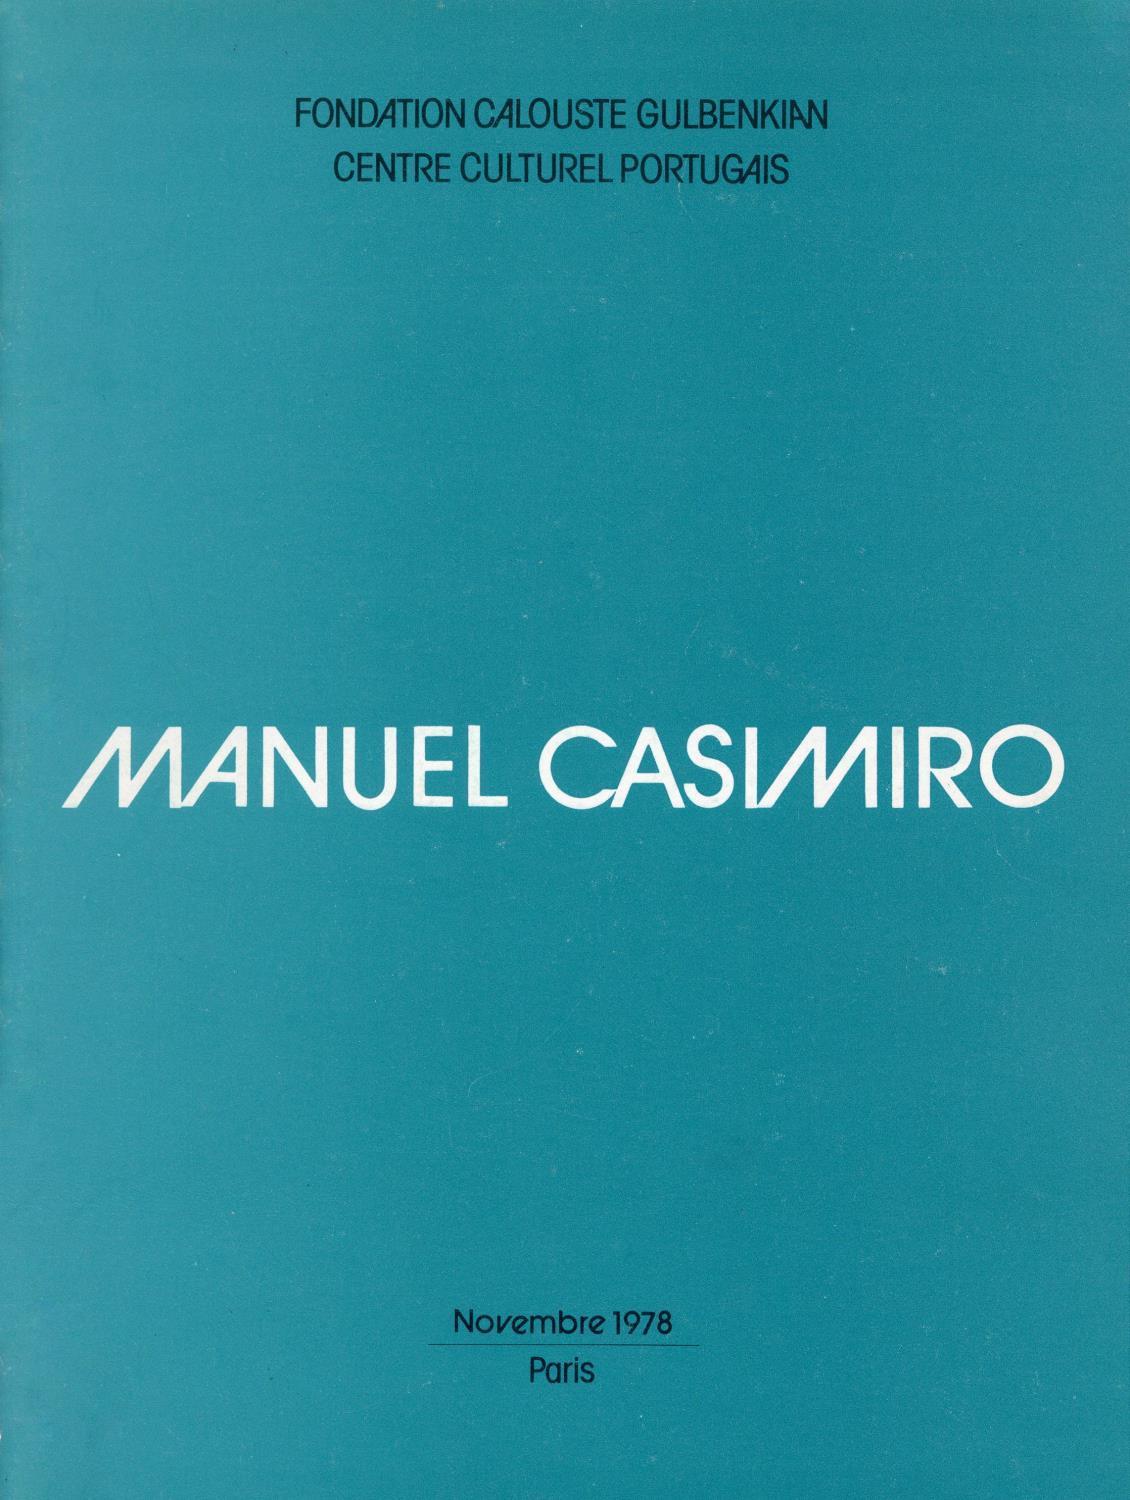 Manuel Casimiro